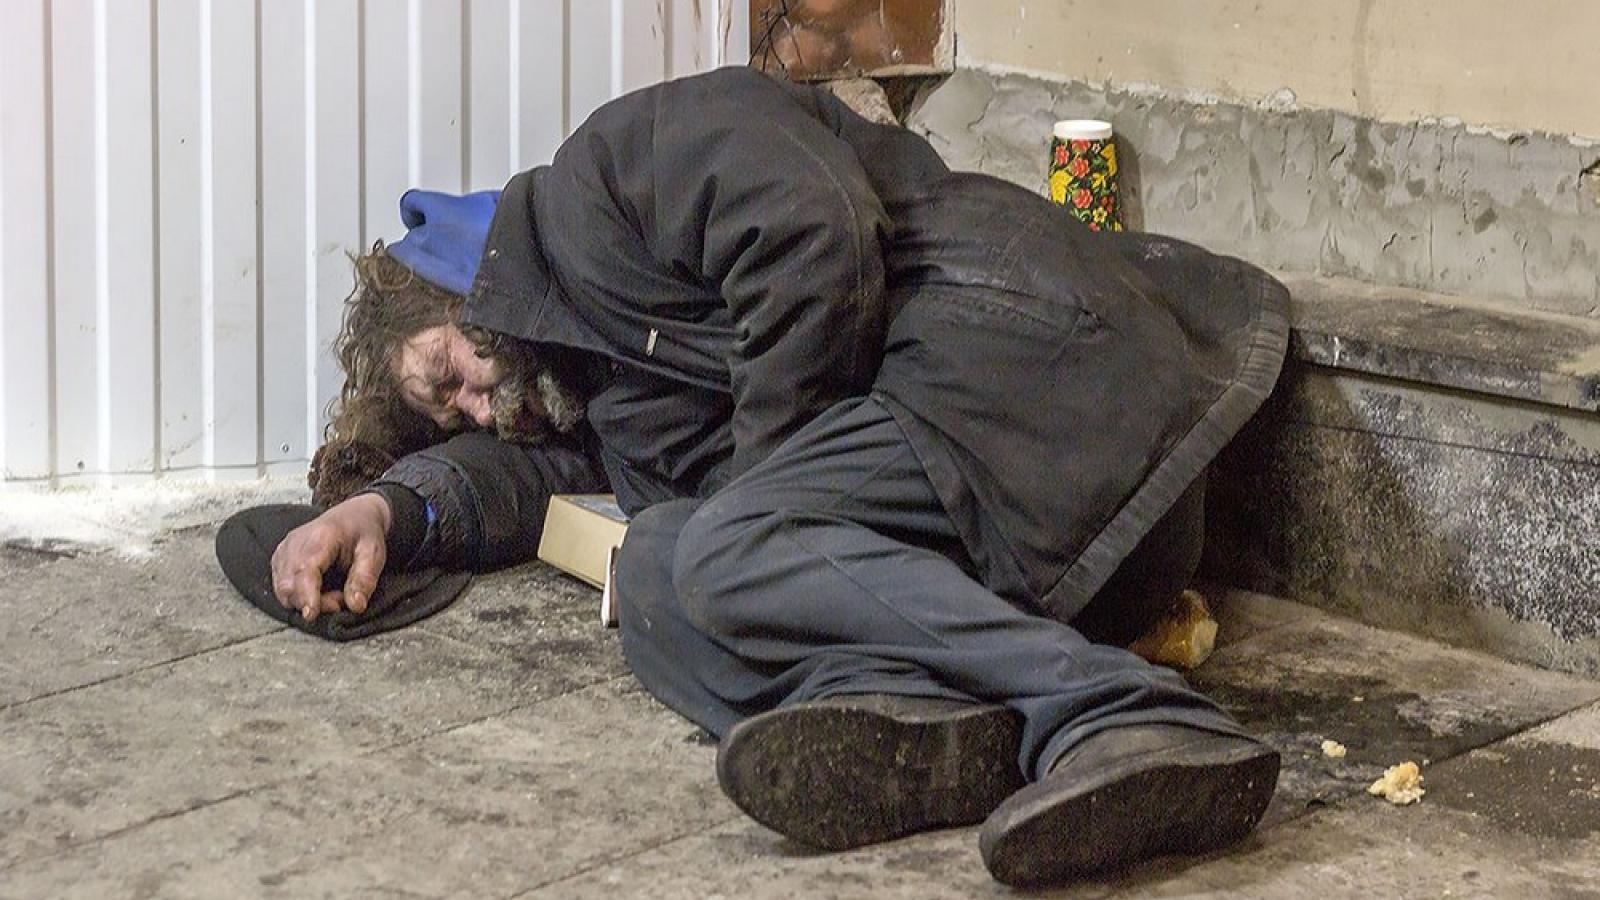 В Вологде выясняют обстоятельства убийства бездомного мужчины